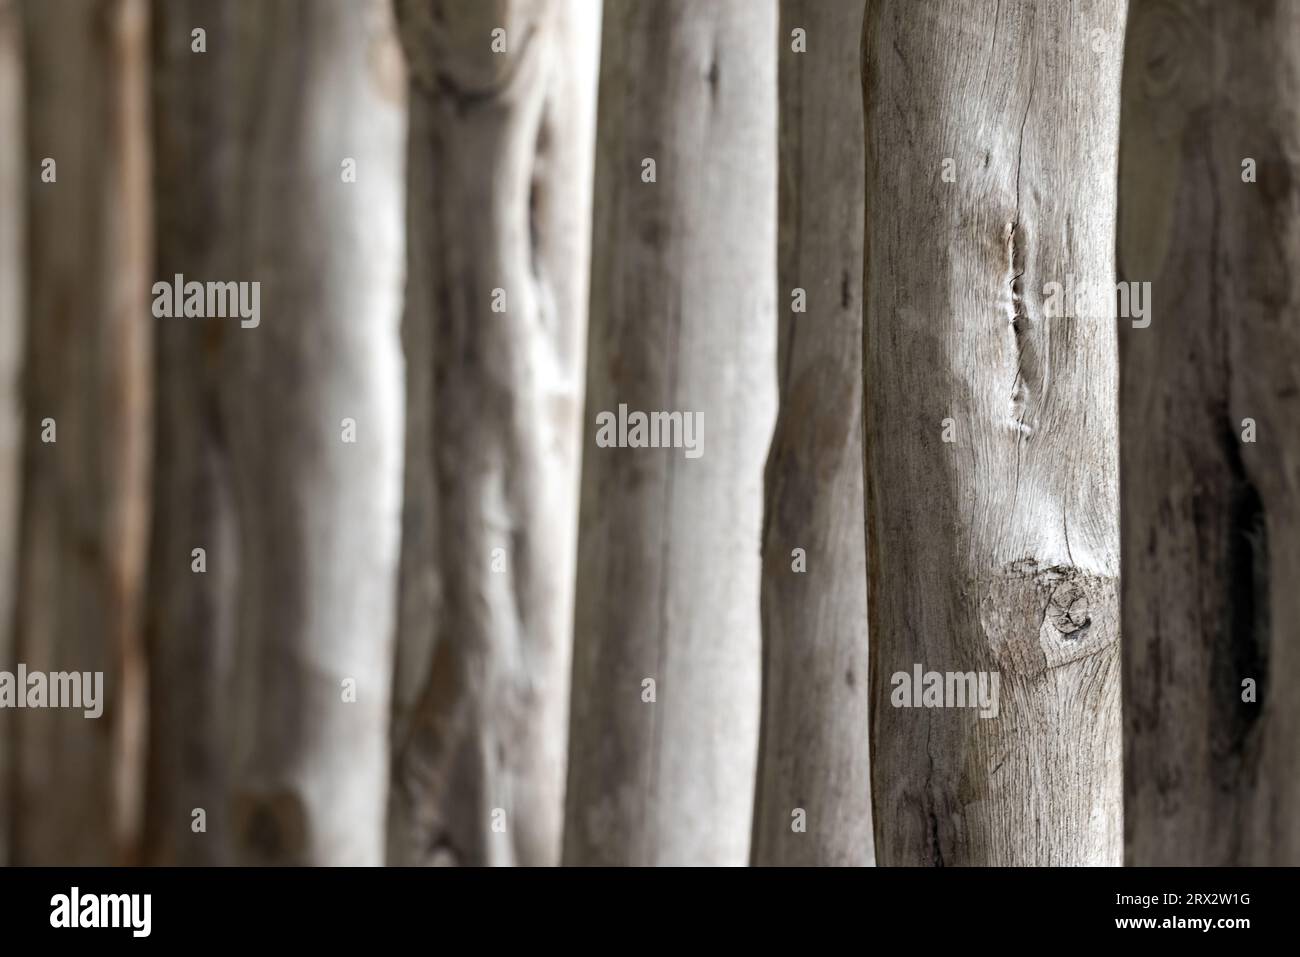 Construction en bois abstraite de bûches blanches dans une rangée, photo de fond avec mise au point sélective Banque D'Images